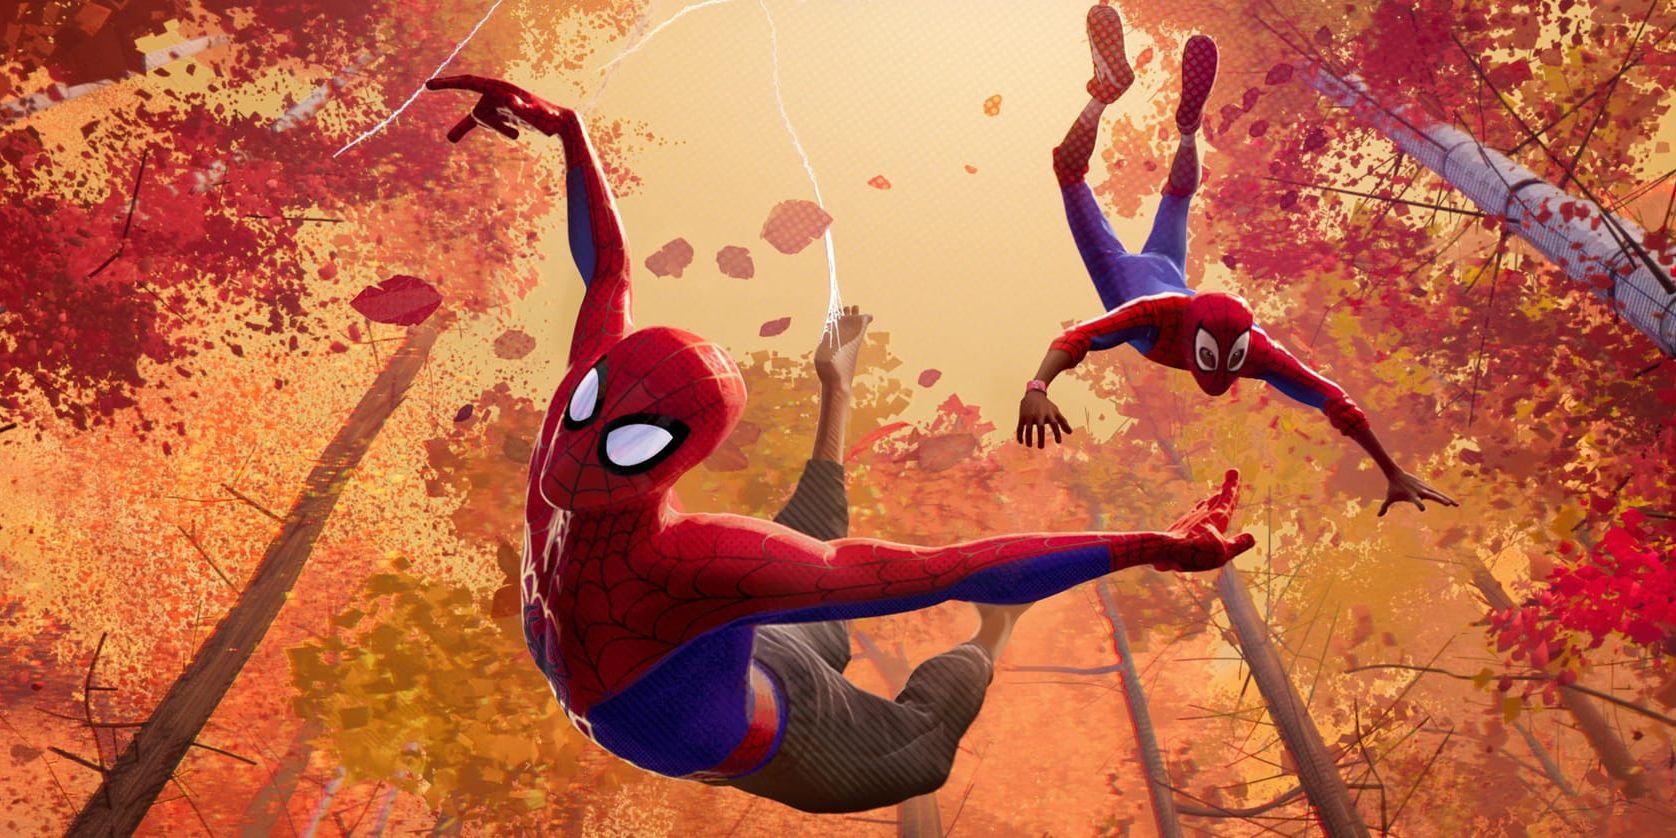 Det handlar om stora pengar när superhjältefilmer produceras. "Det är inte billigt och pengarna ska ju tillbaka, det är därför det satsas så mycket på säkra kort. Men den här gången fick vi verkligen experimentera", säger Viktor Lundqvist som gjort visuella effekter till "Spider-Man: Into the spiderverse". Pressbild.